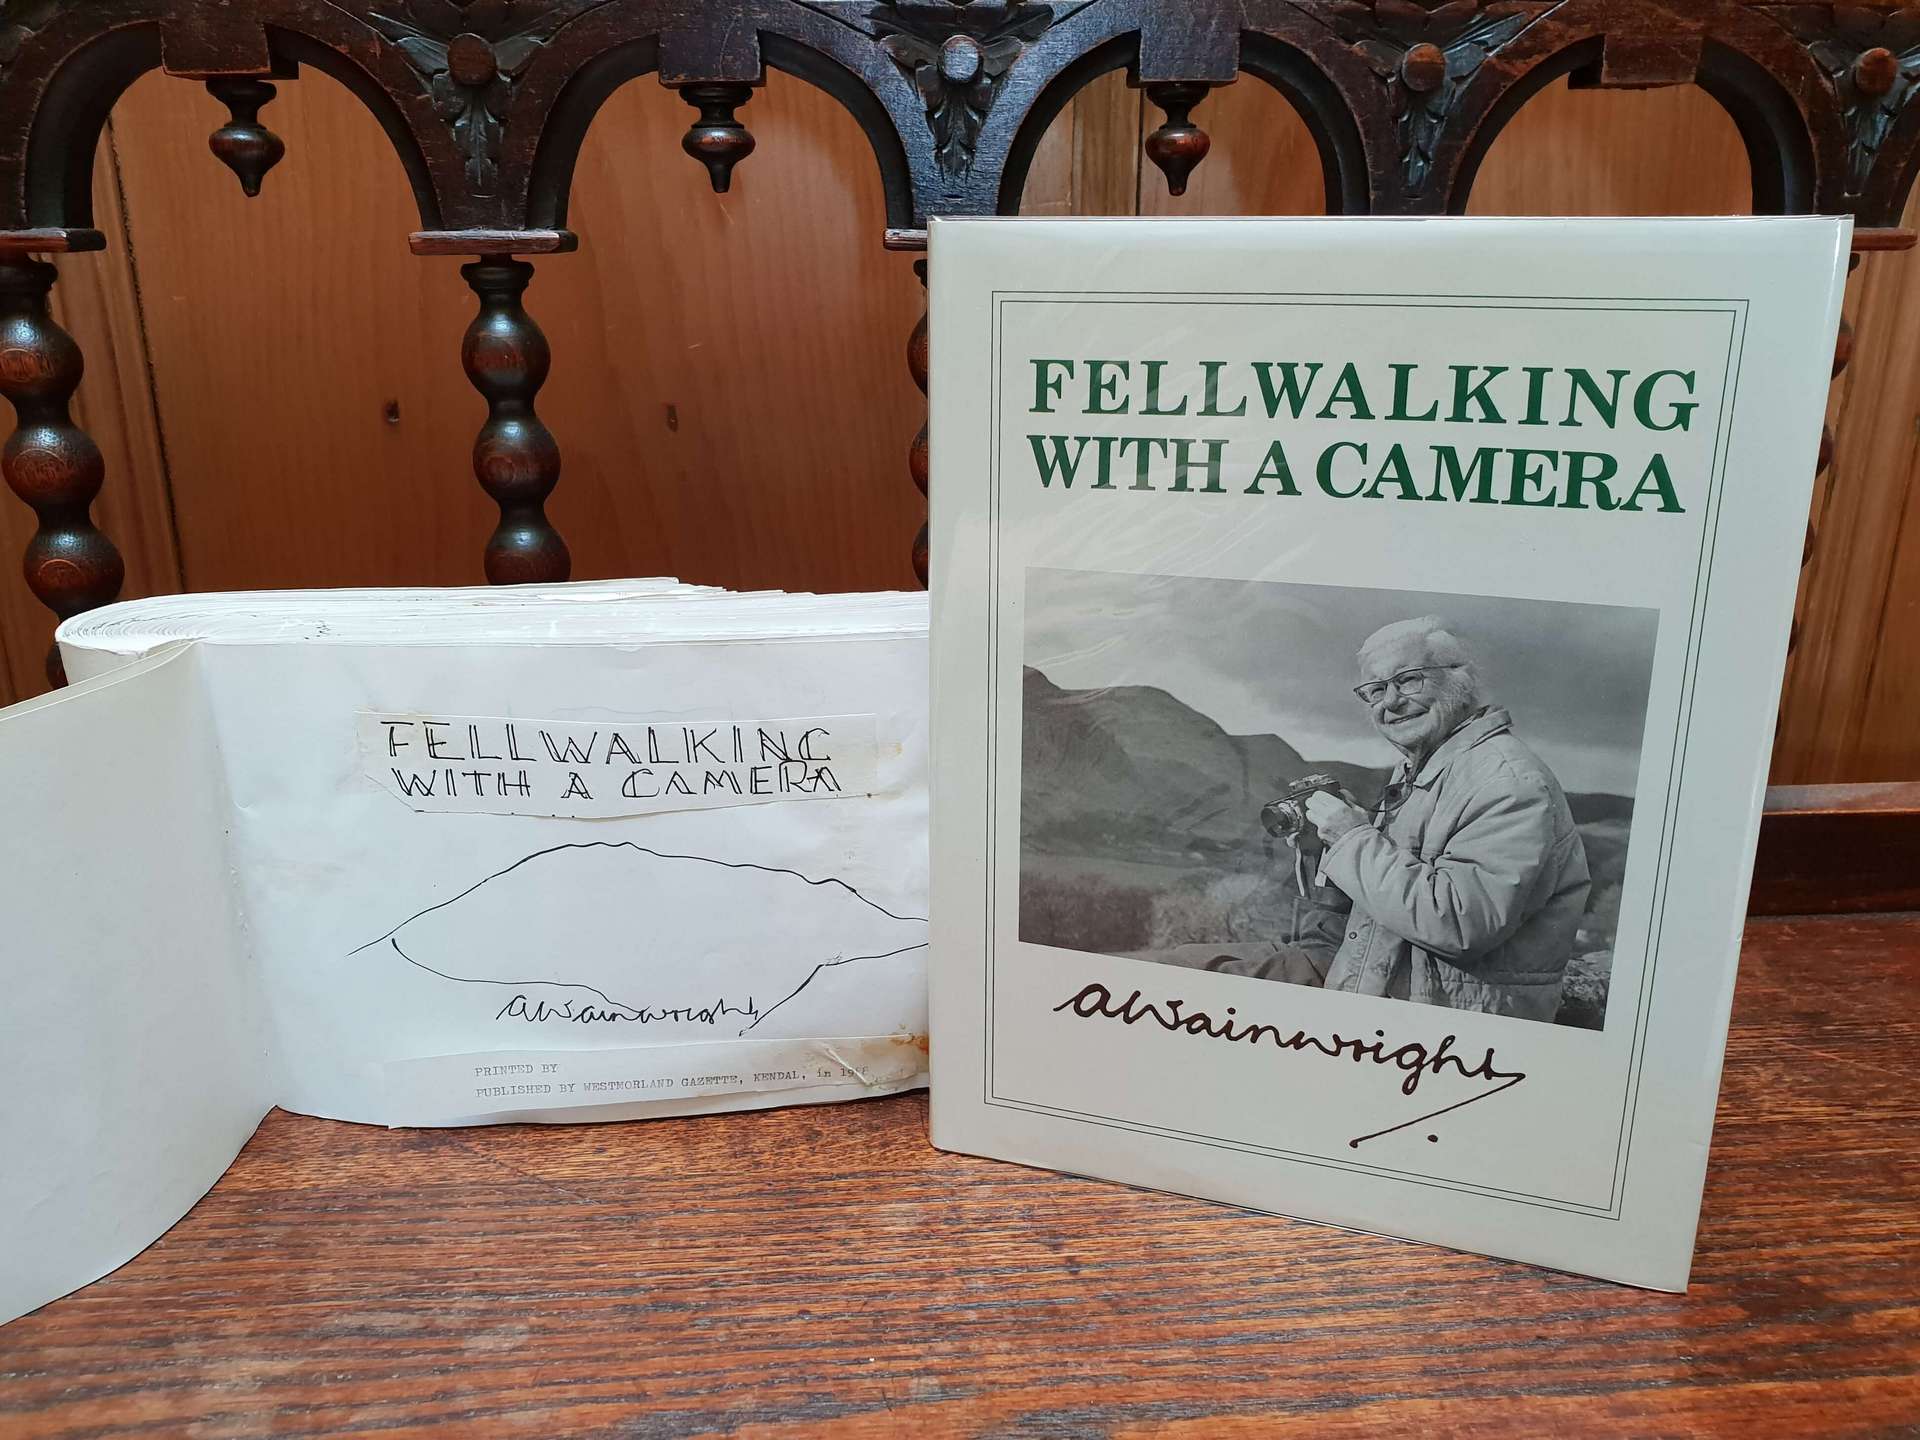 Fellwalking With a Camera and Wainwright's Original Manuscript